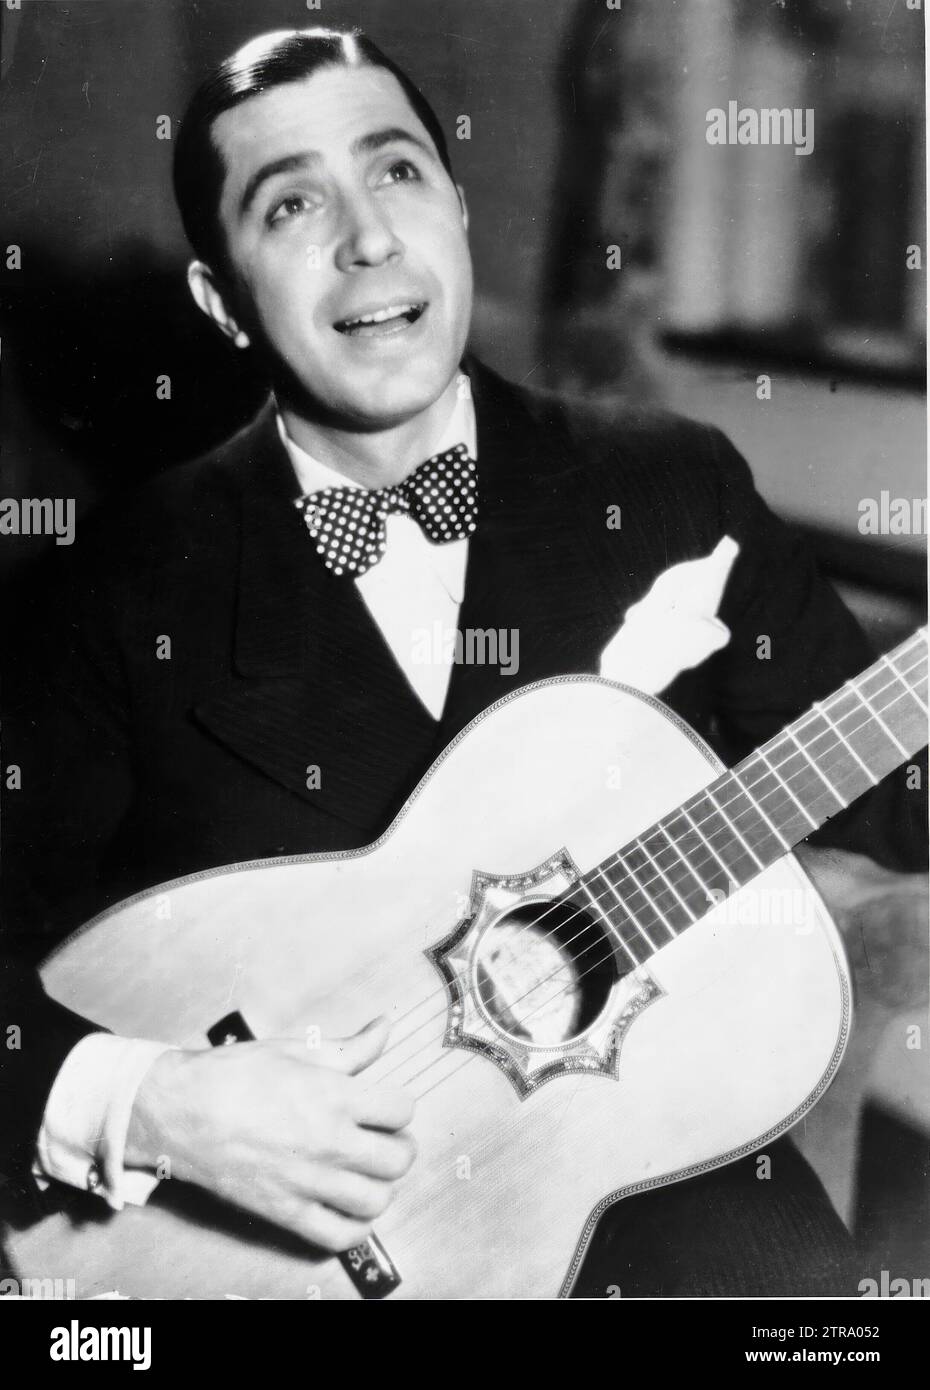 01/01/1920. Carlos Gardel. Quelle: Album/Archivo ABC Stockfoto